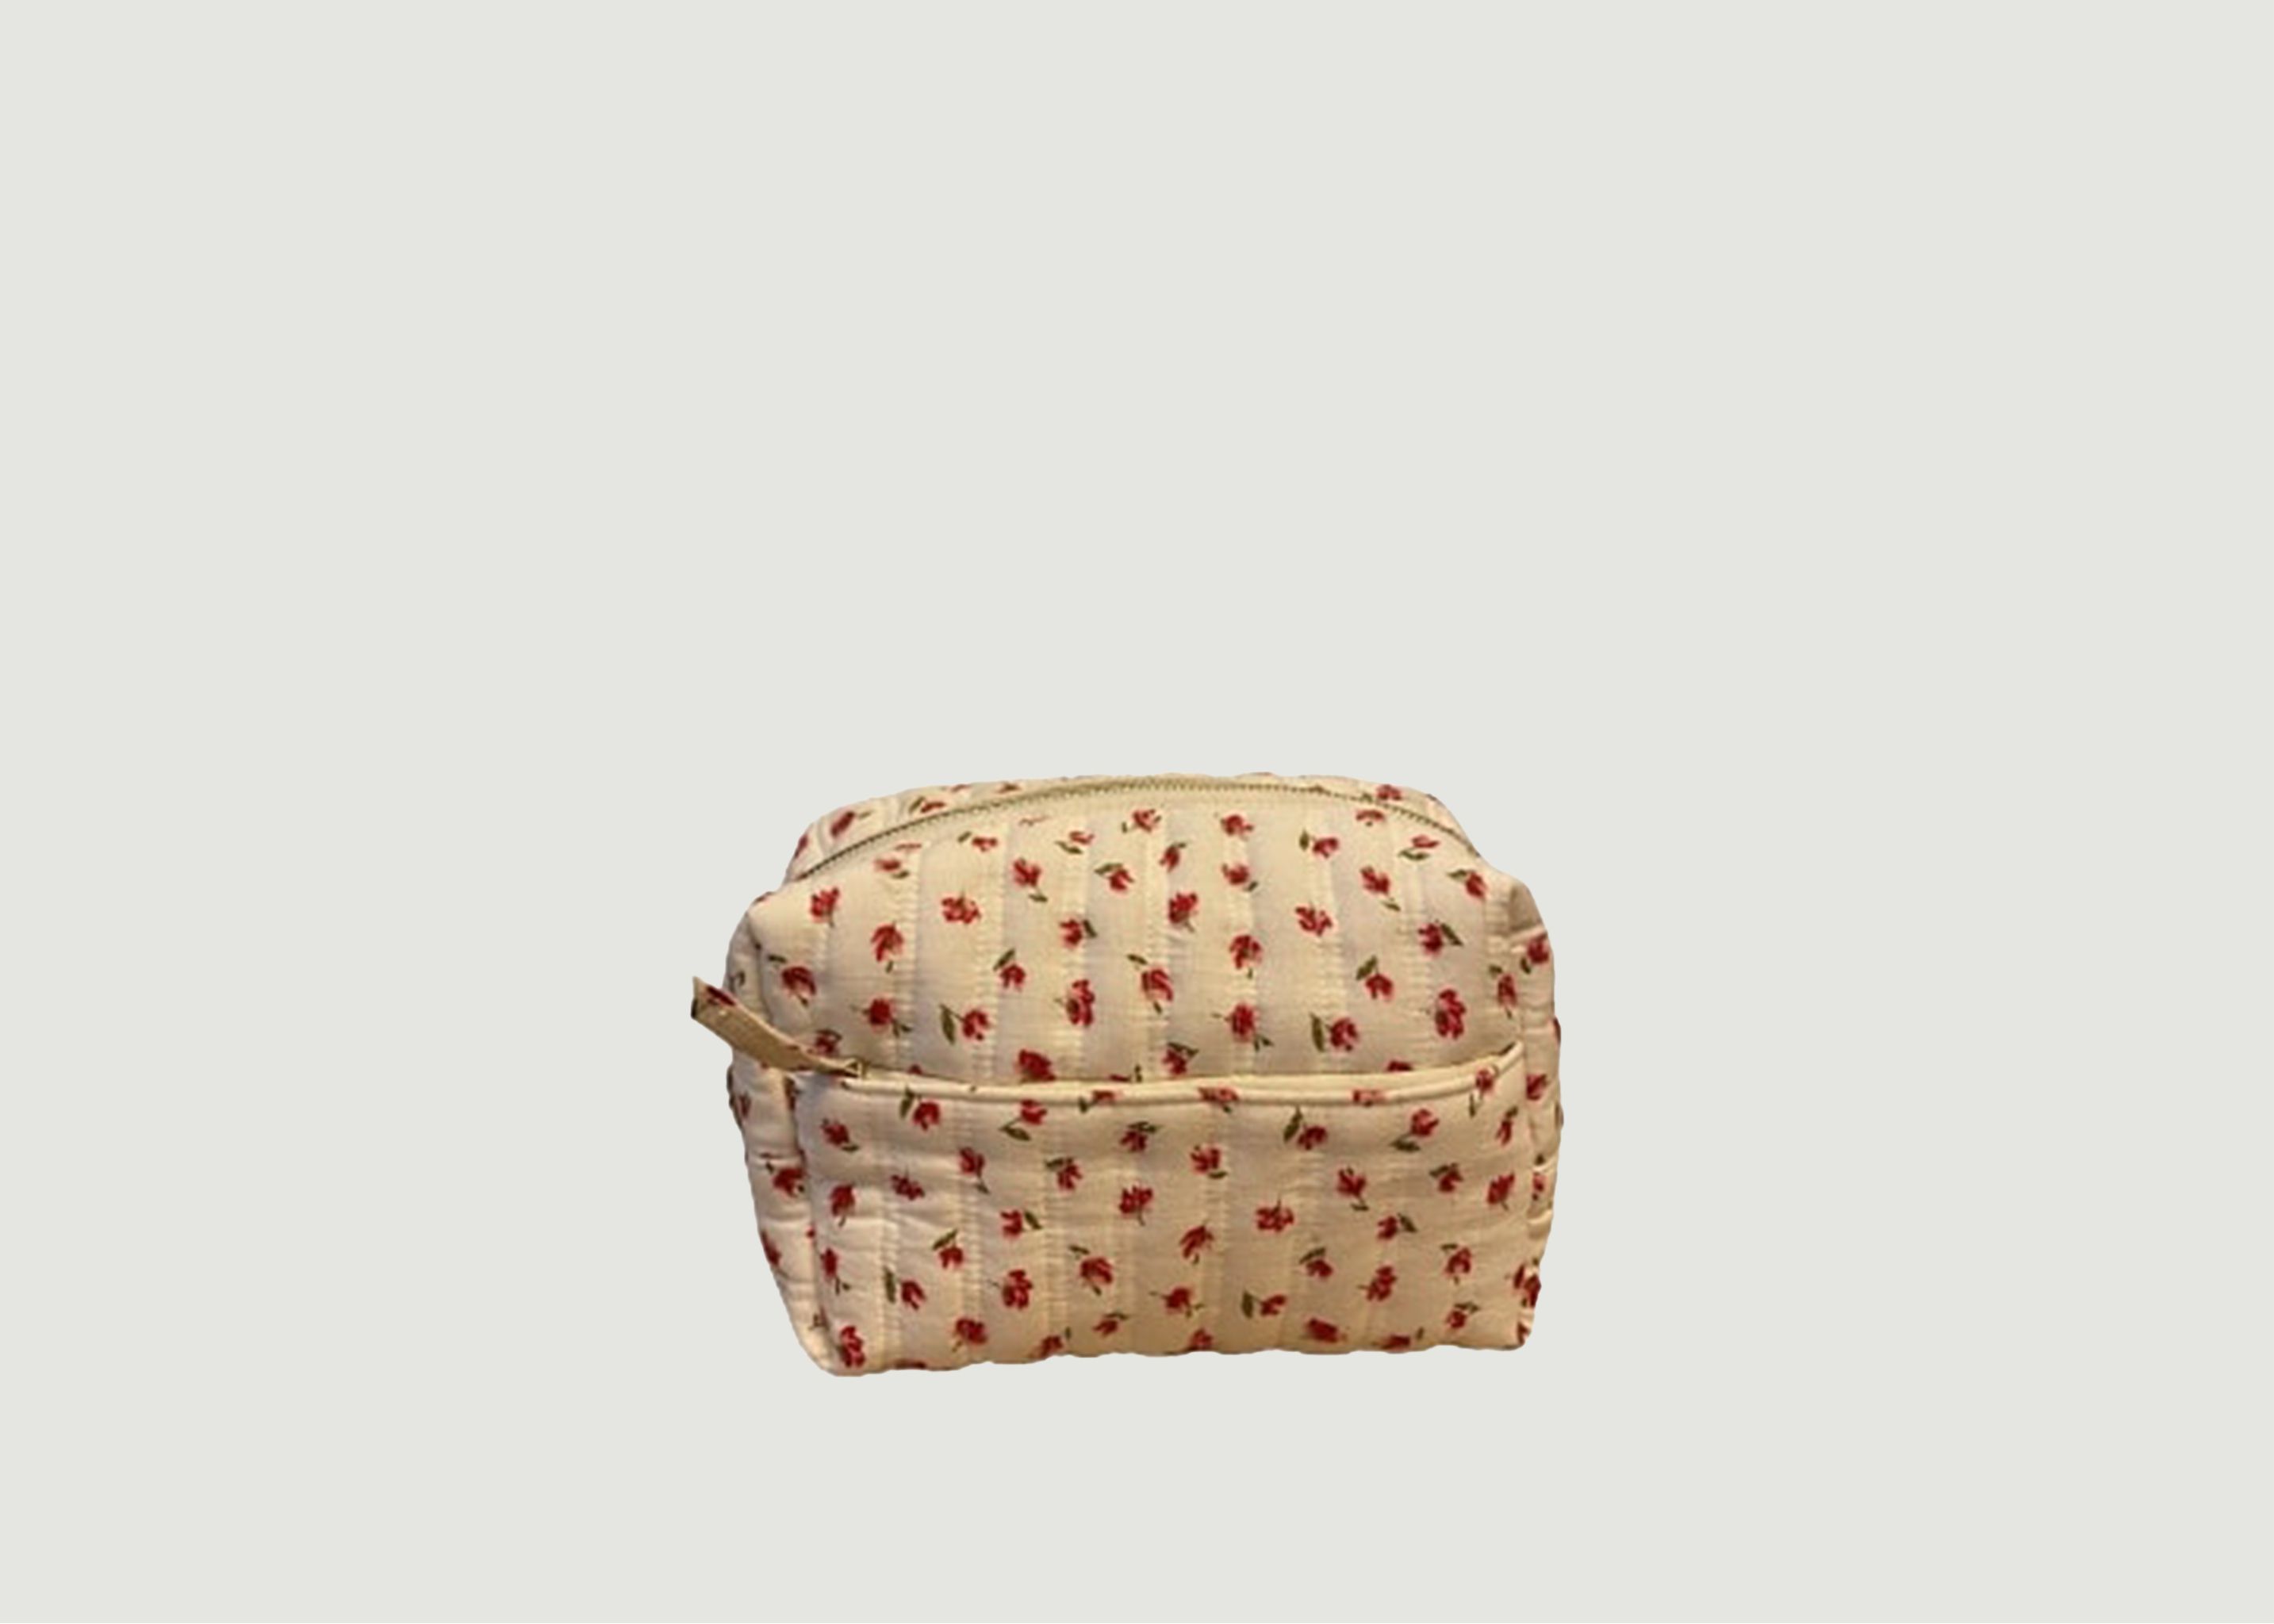 Matsya floral print cotton toiletry bag - Petite Mendigote